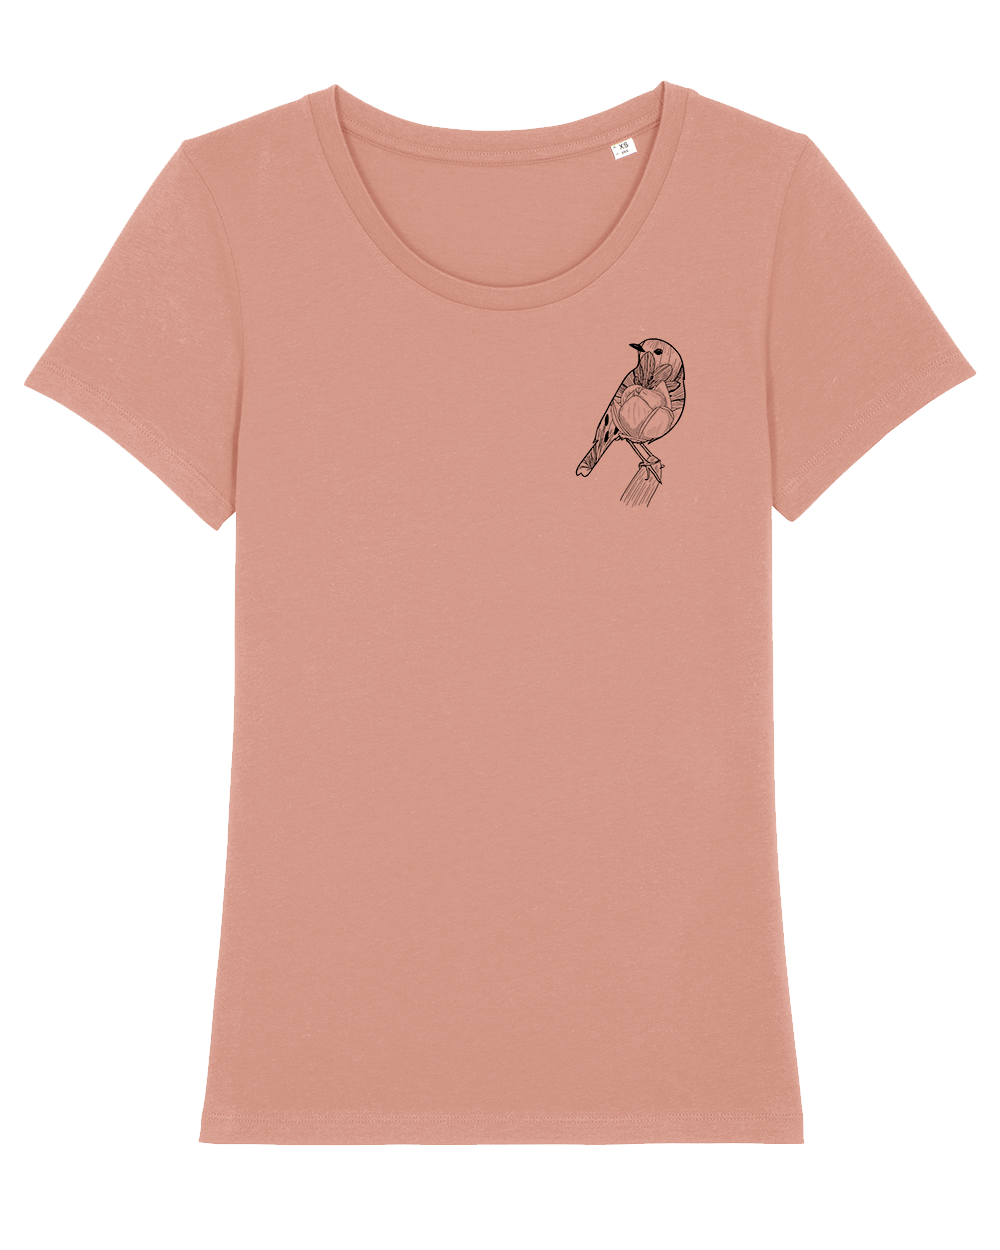 Vögelchen Shirt (apricot)